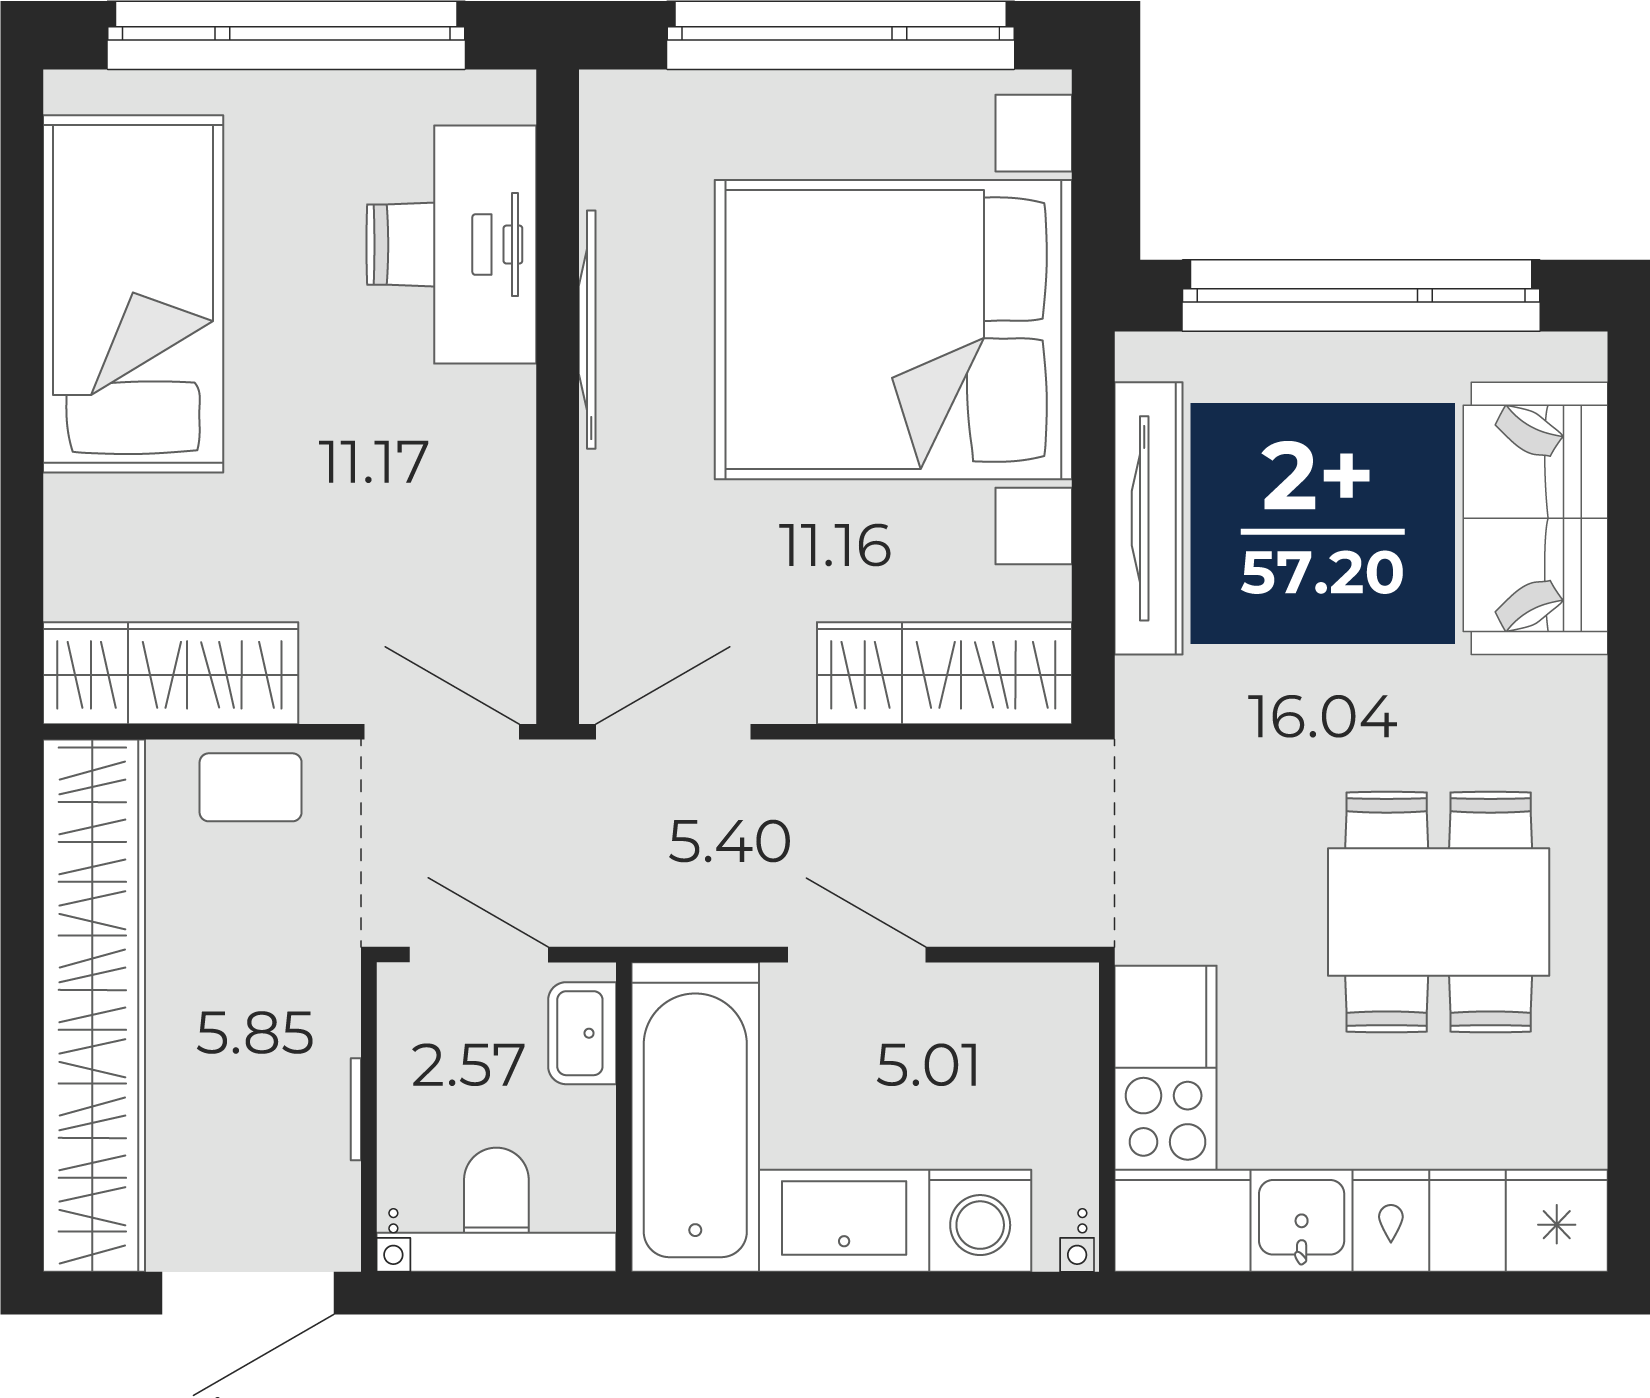 Квартира № 117, 2-комнатная, 57.2 кв. м, 1 этаж